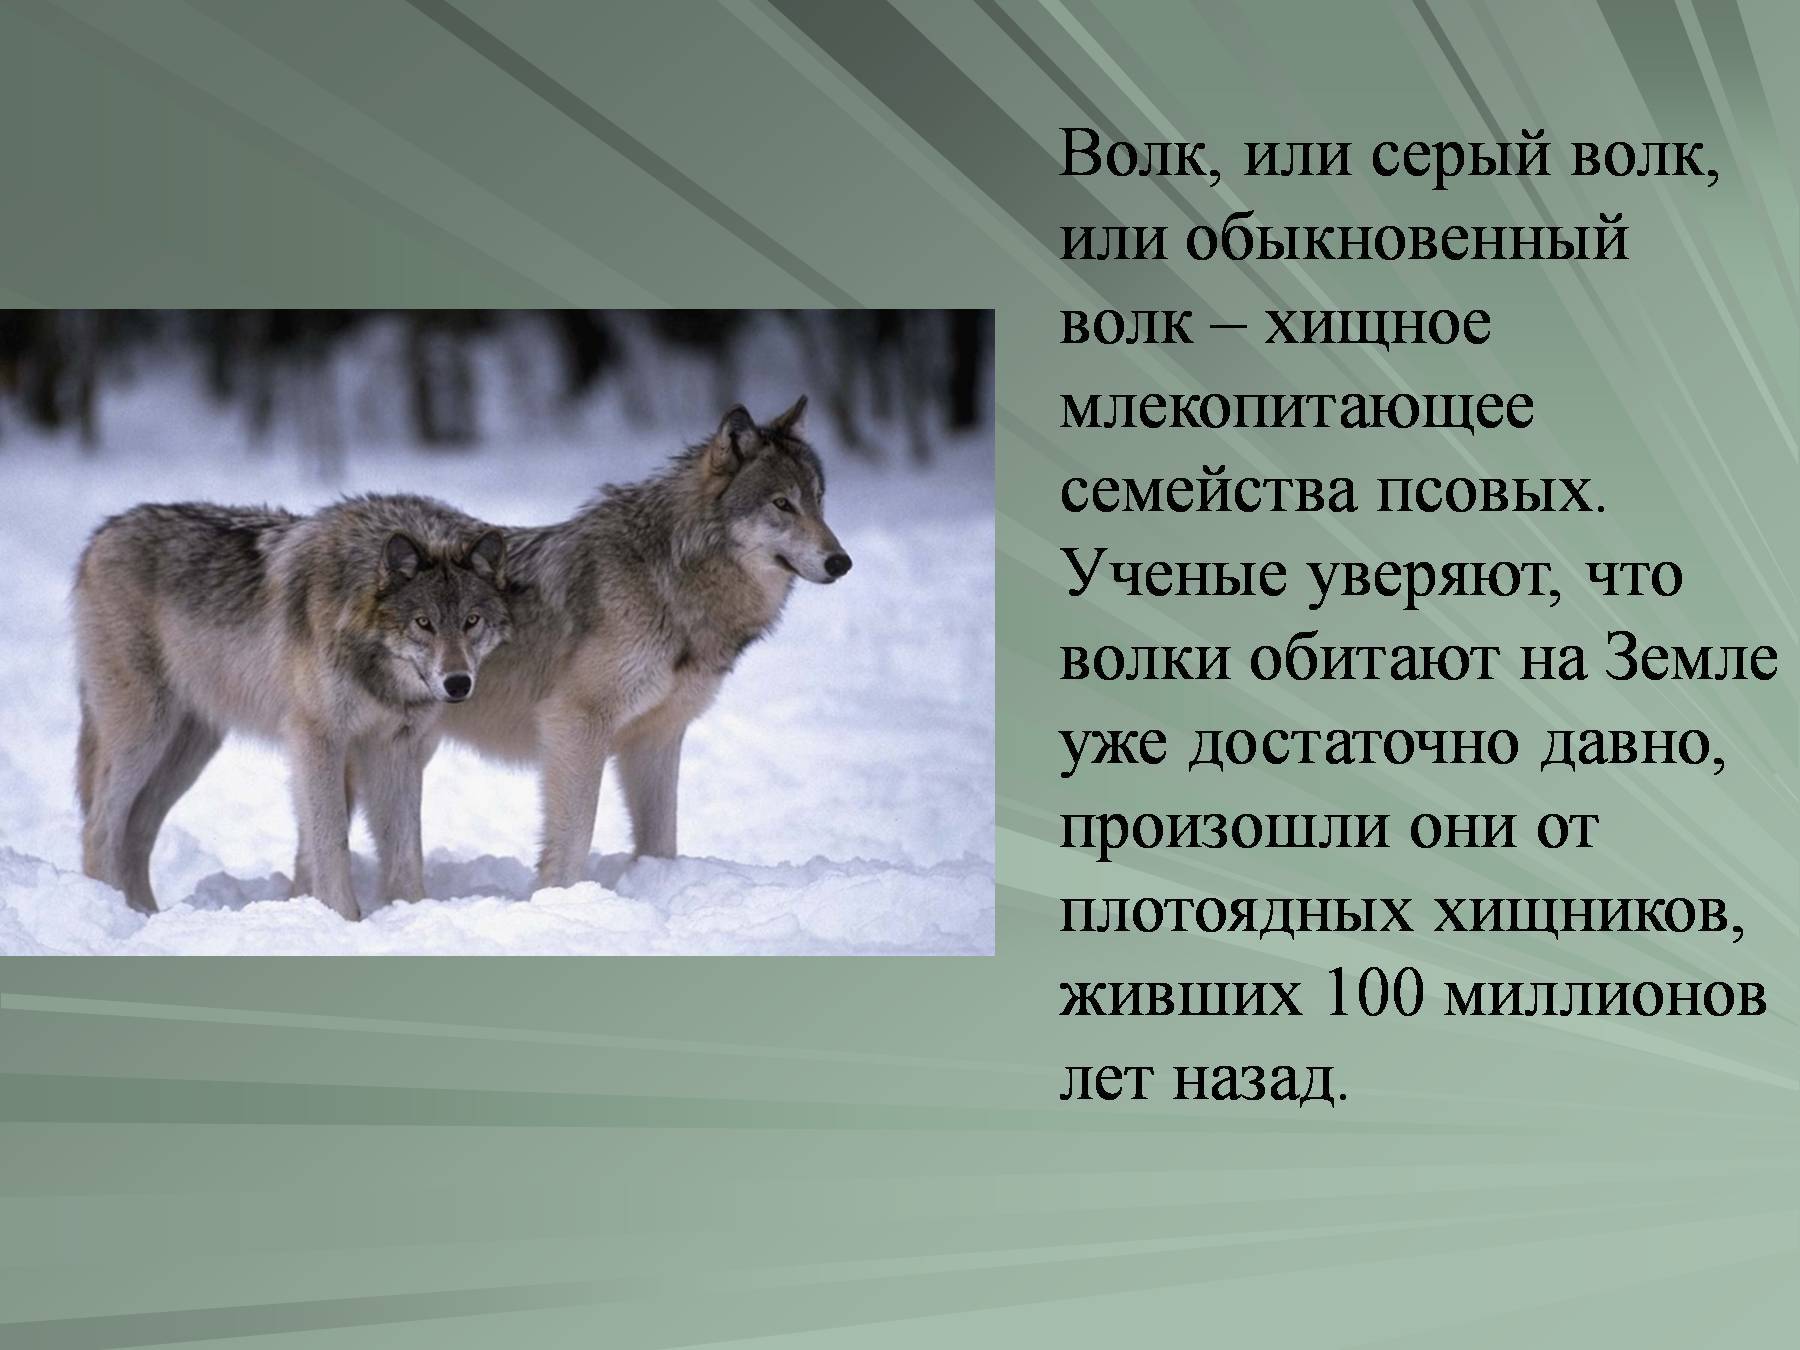 Сообщение о волке